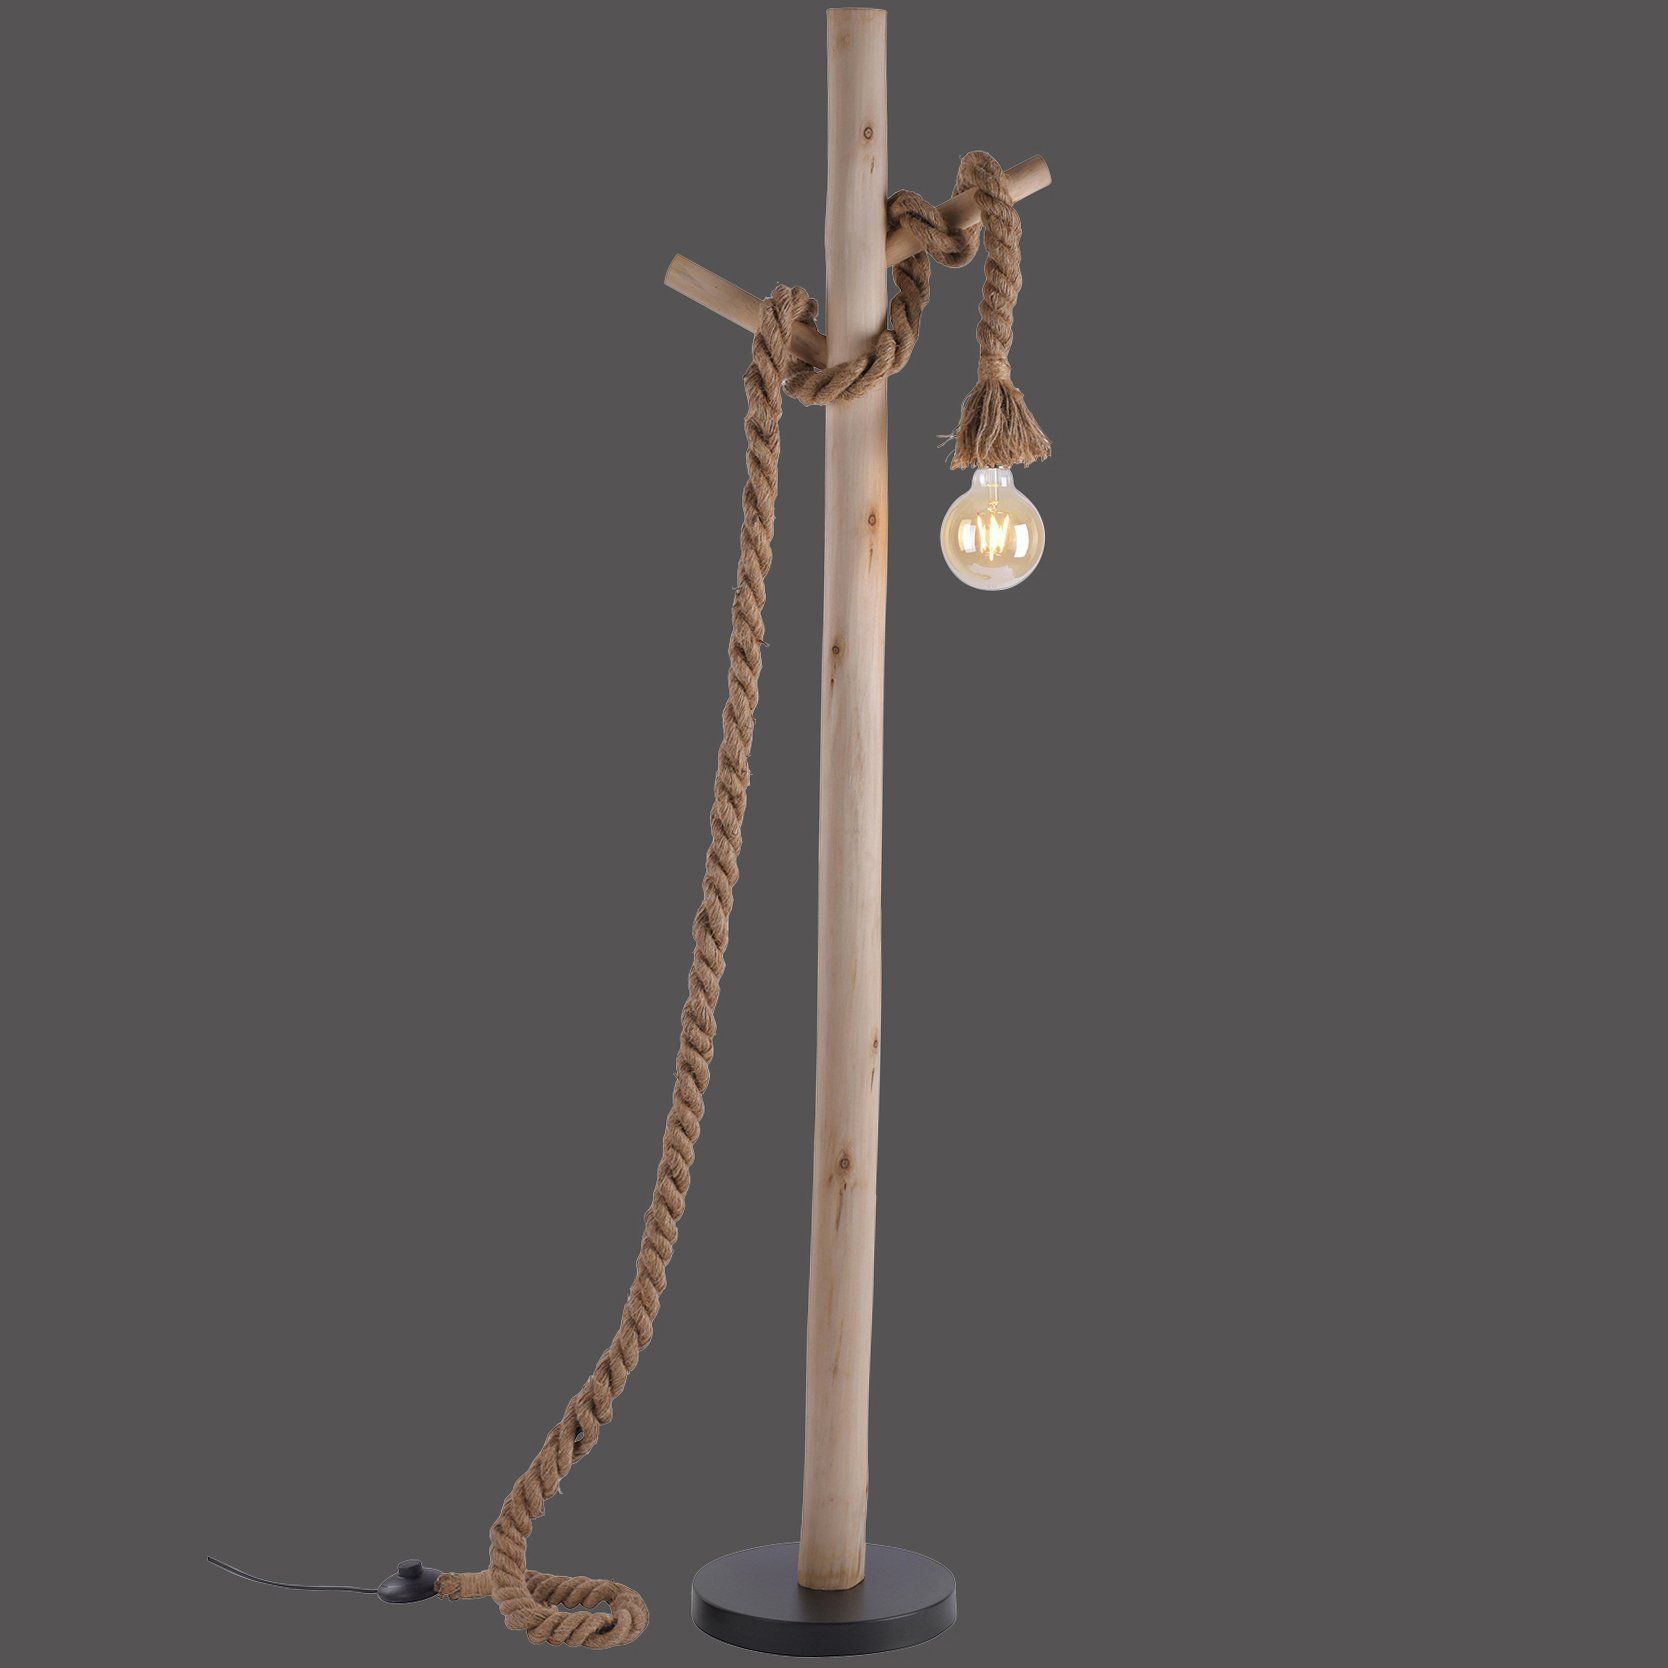 Lampadaire sur pied en bois,corde et métal noir, Osasy luminaire